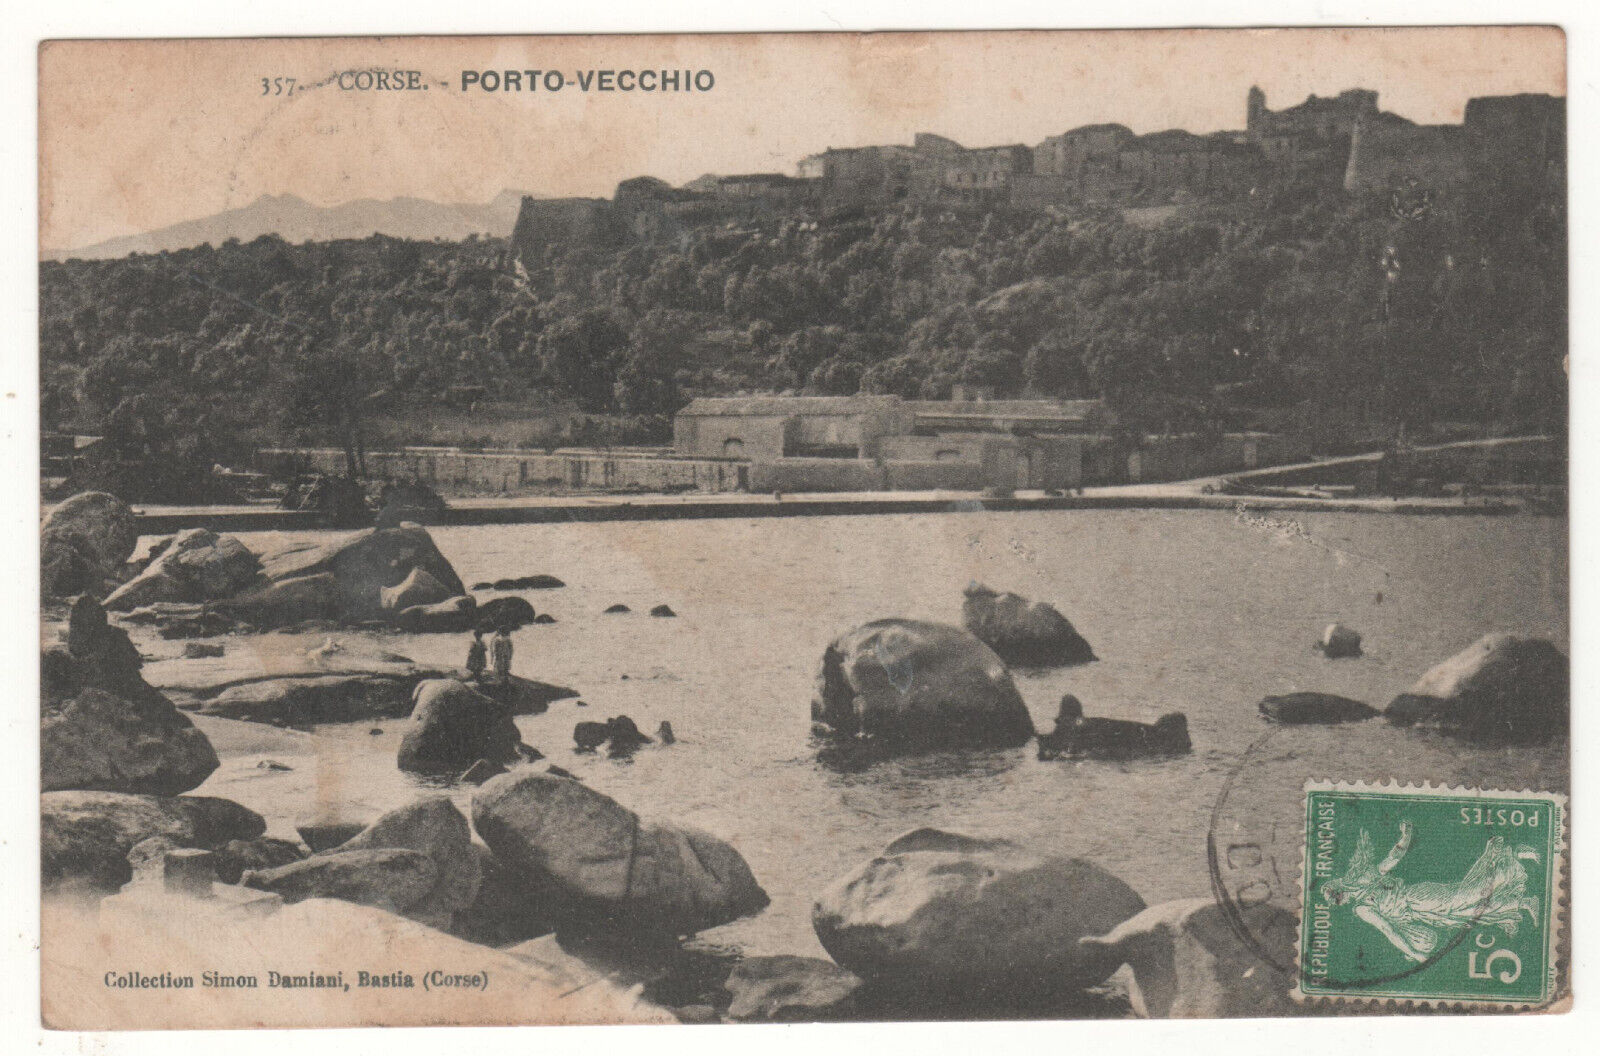 CPA 2A - PORTO-VECCHIO: GENERAL VIEW (SOUTH CORSICA) WRITTEN 24-05-1914 - CONDITION